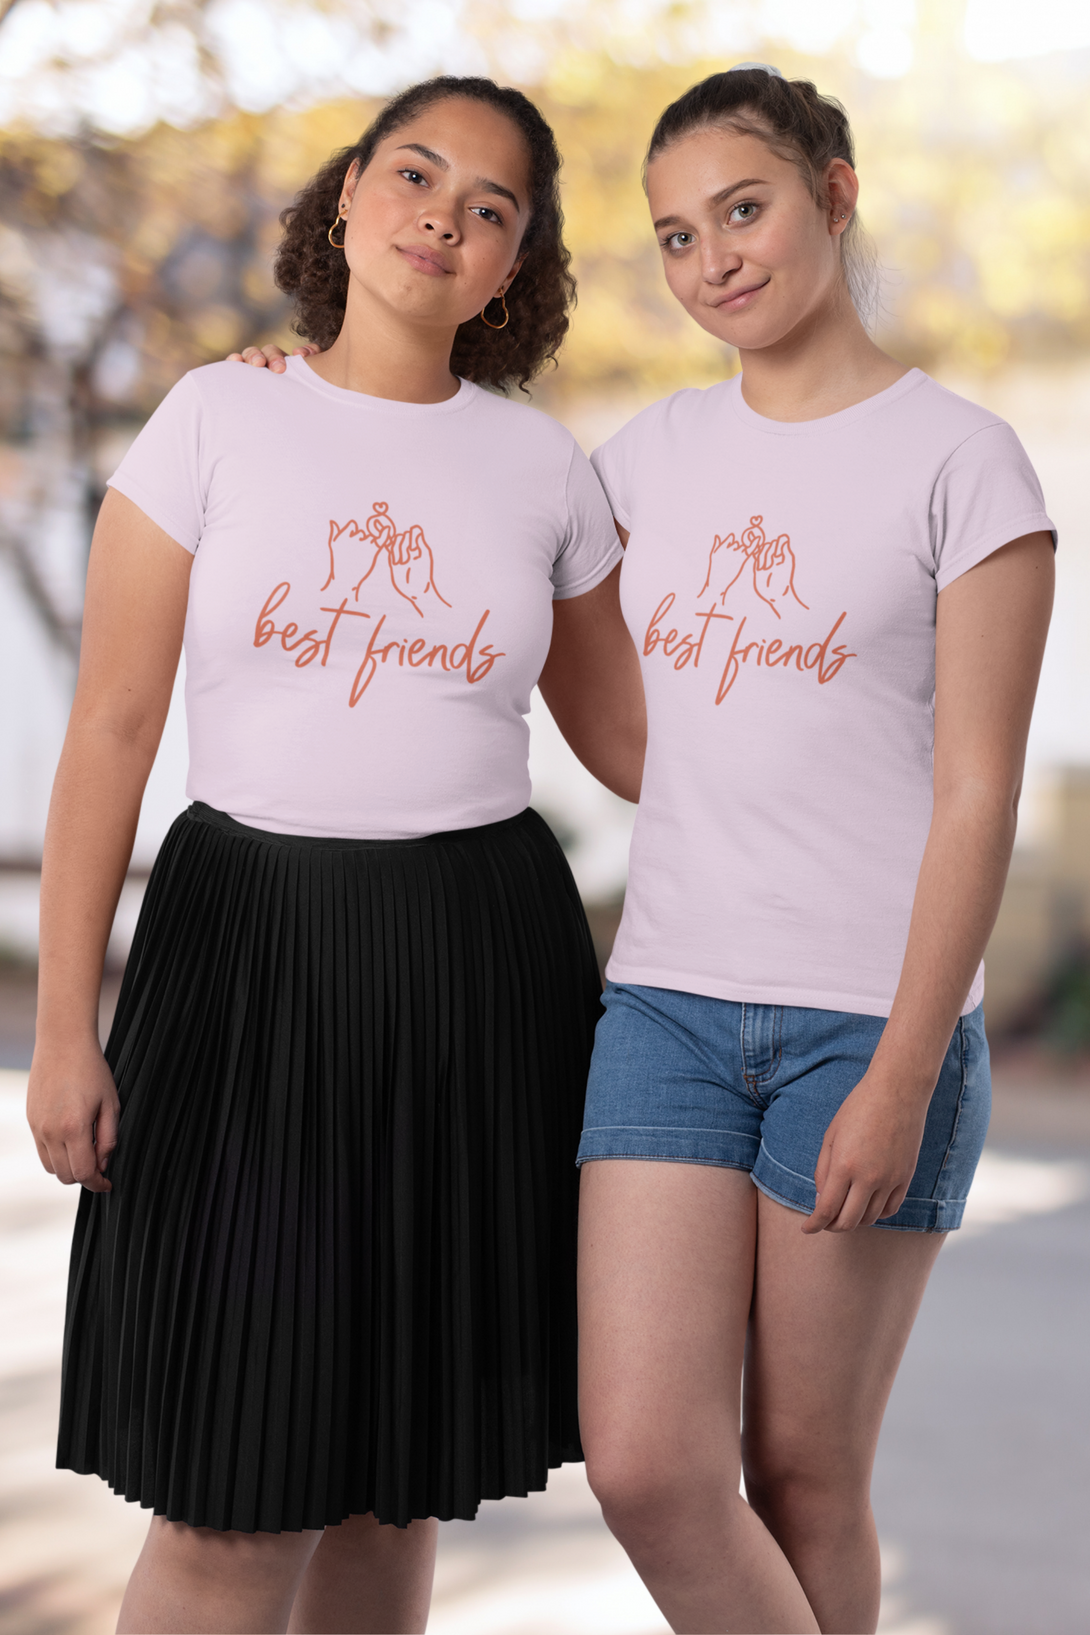 Best Friends Printed T-Shirt For Women - WowWaves - 4